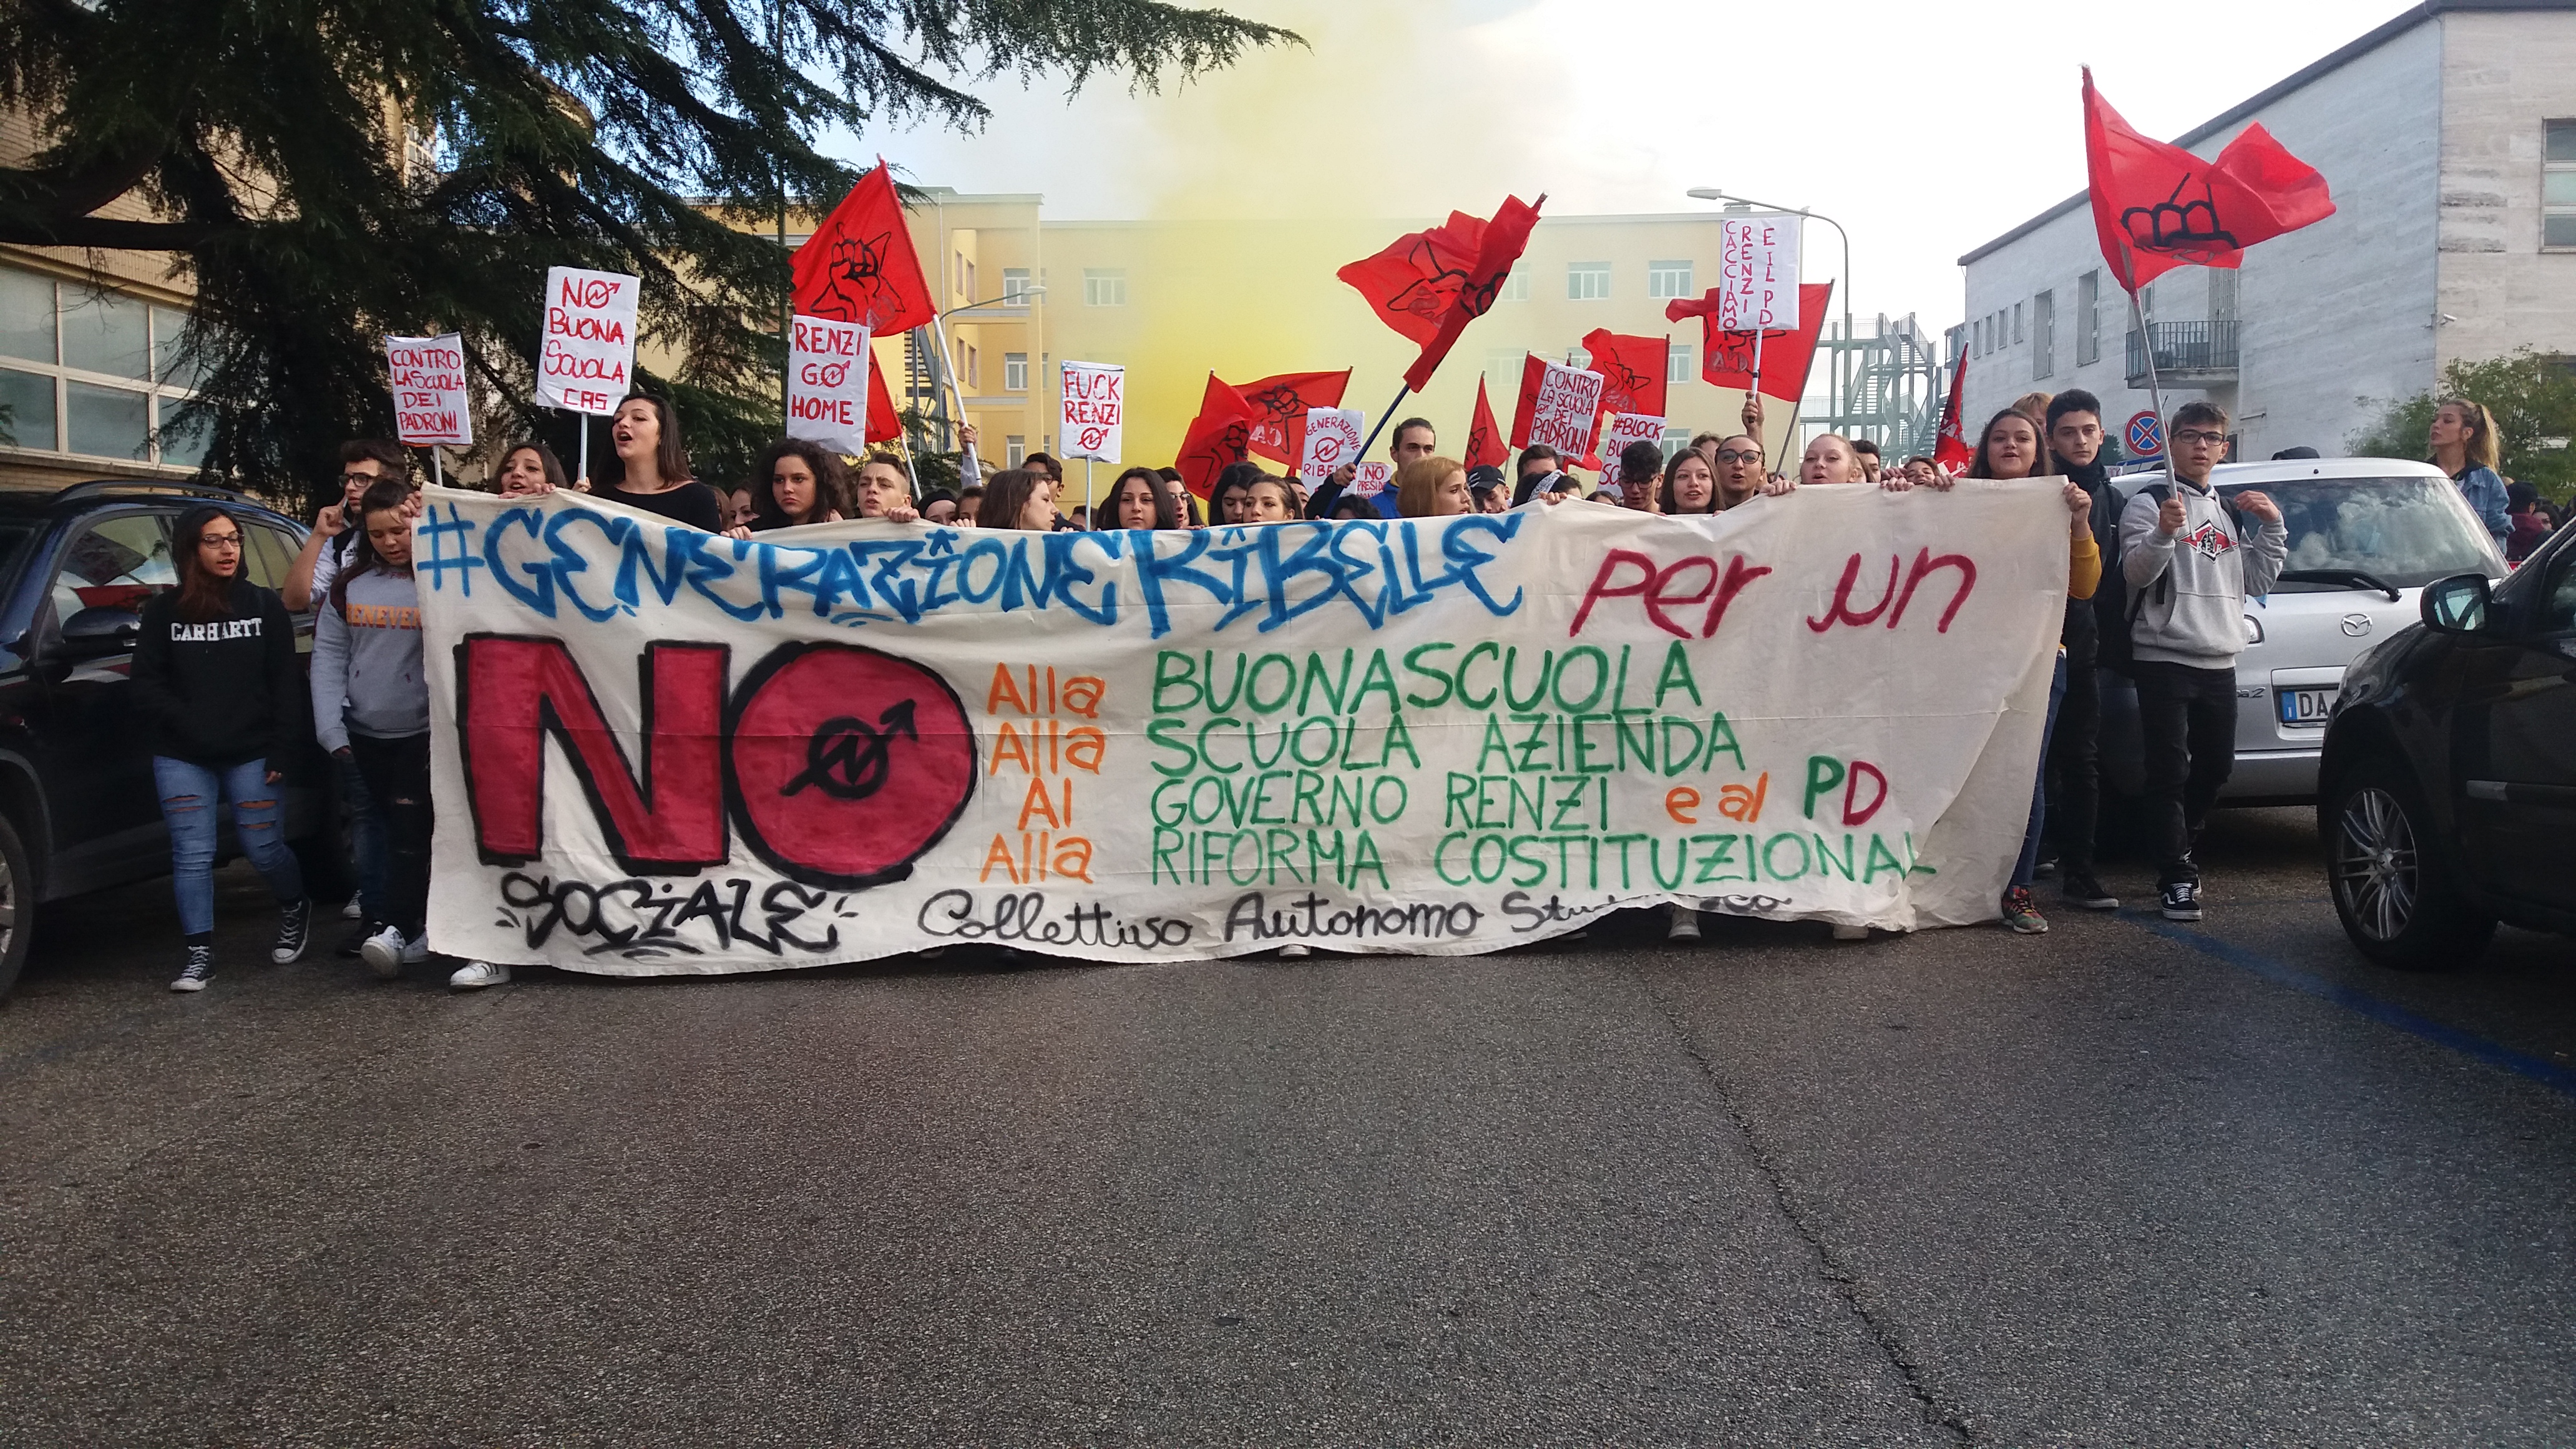 Renzi a Benevento, protestano i movimenti